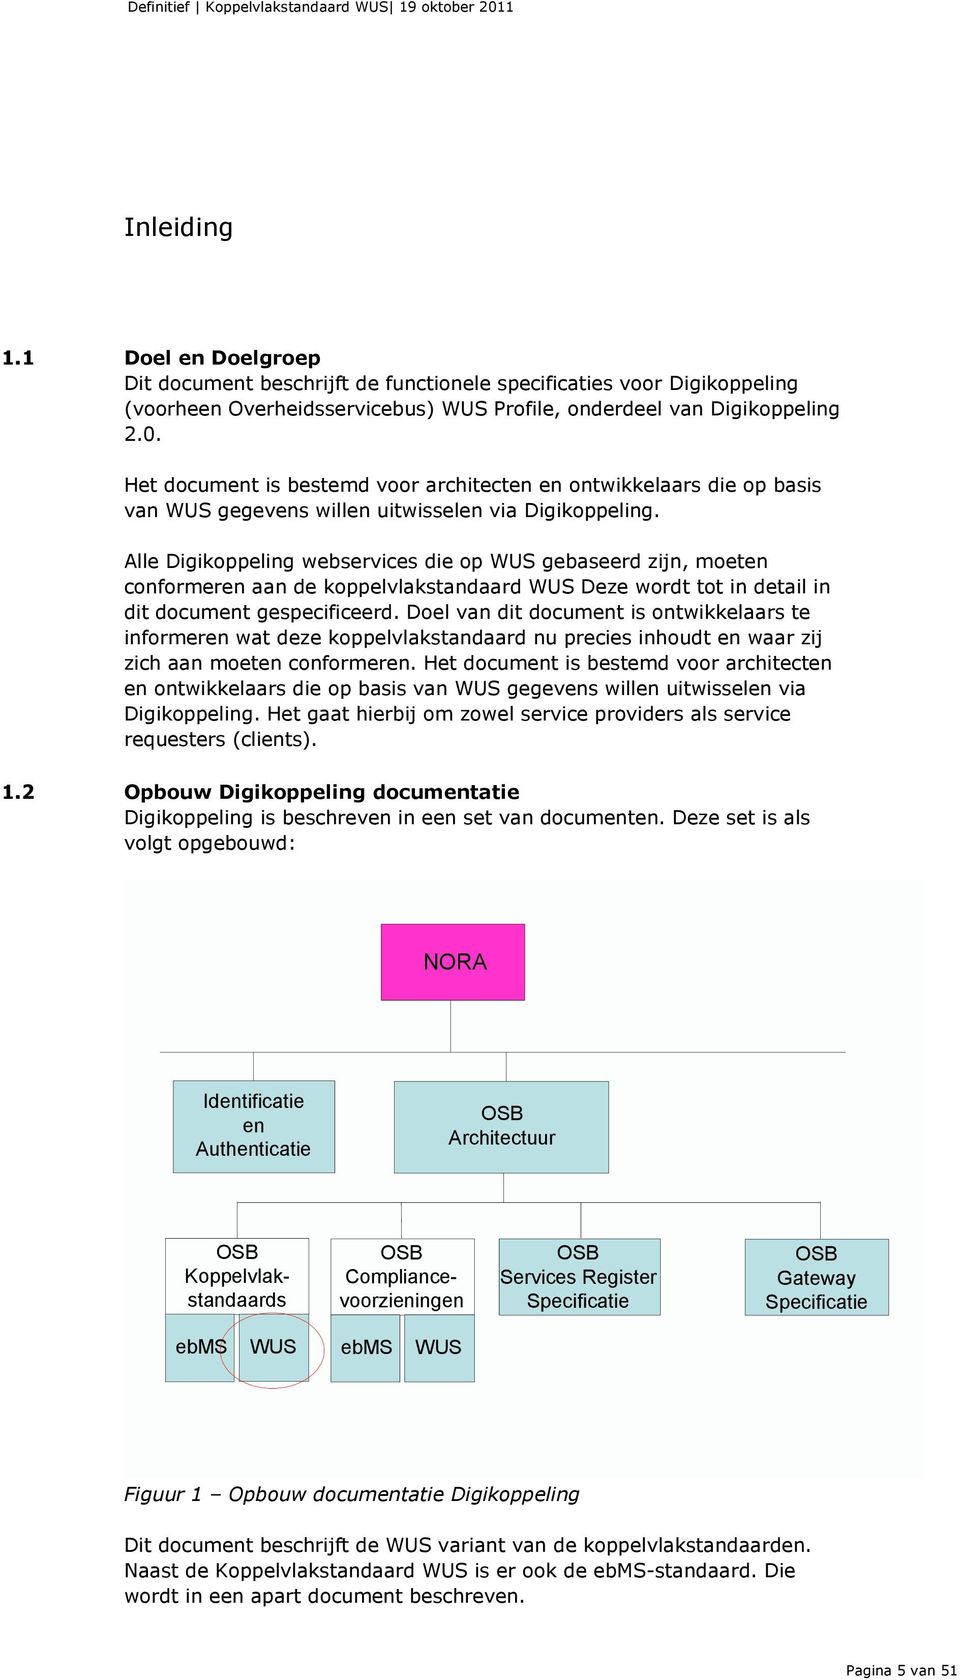 Alle Digikoppeling webservices die op WUS gebaseerd zijn, moeten conformeren aan de koppelvlakstandaard WUS Deze wordt tot in detail in dit document gespecificeerd.